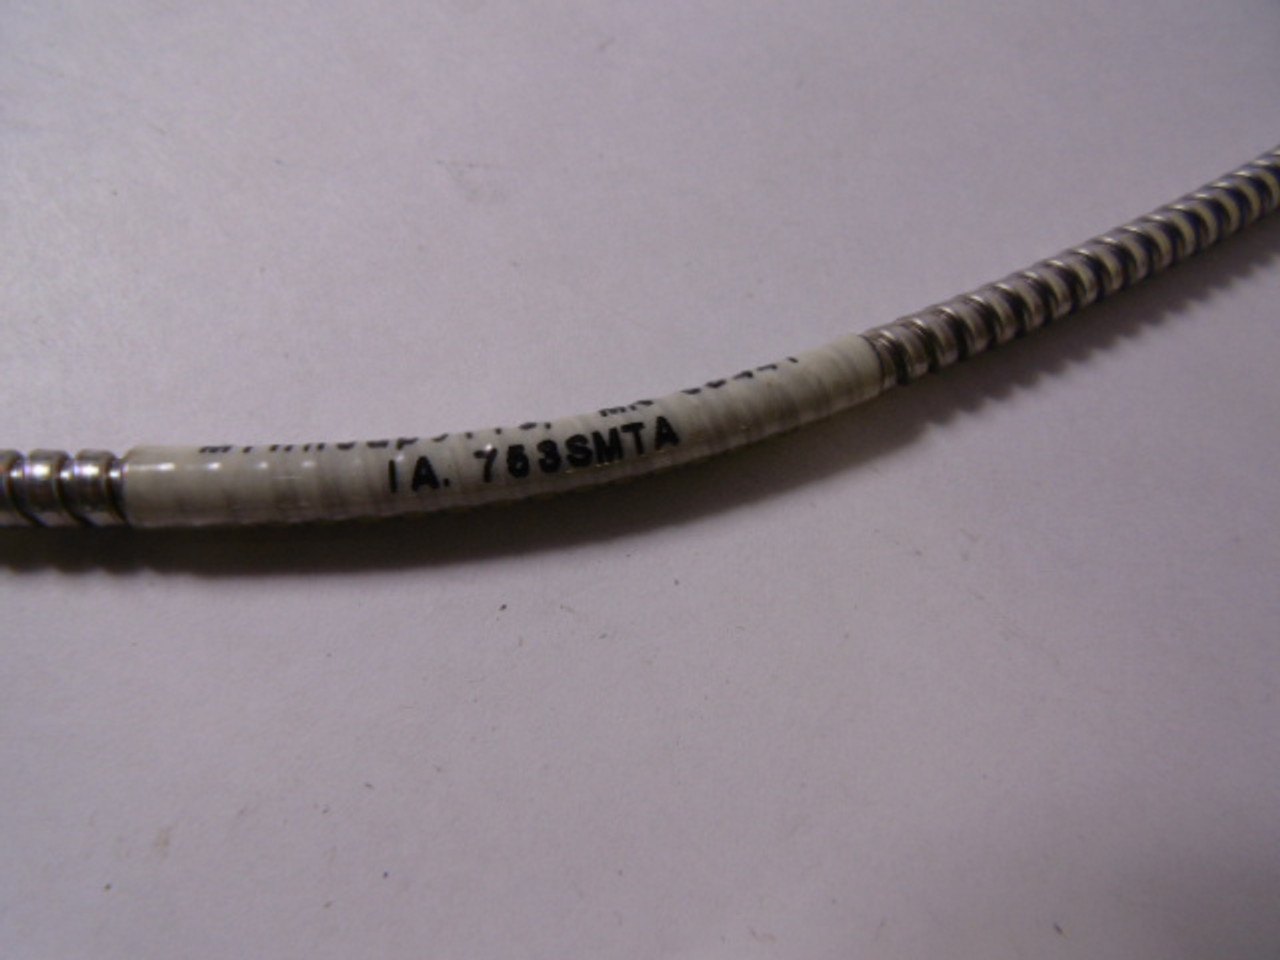 Banner IA.753SMTA Fiber Optic Cable USED